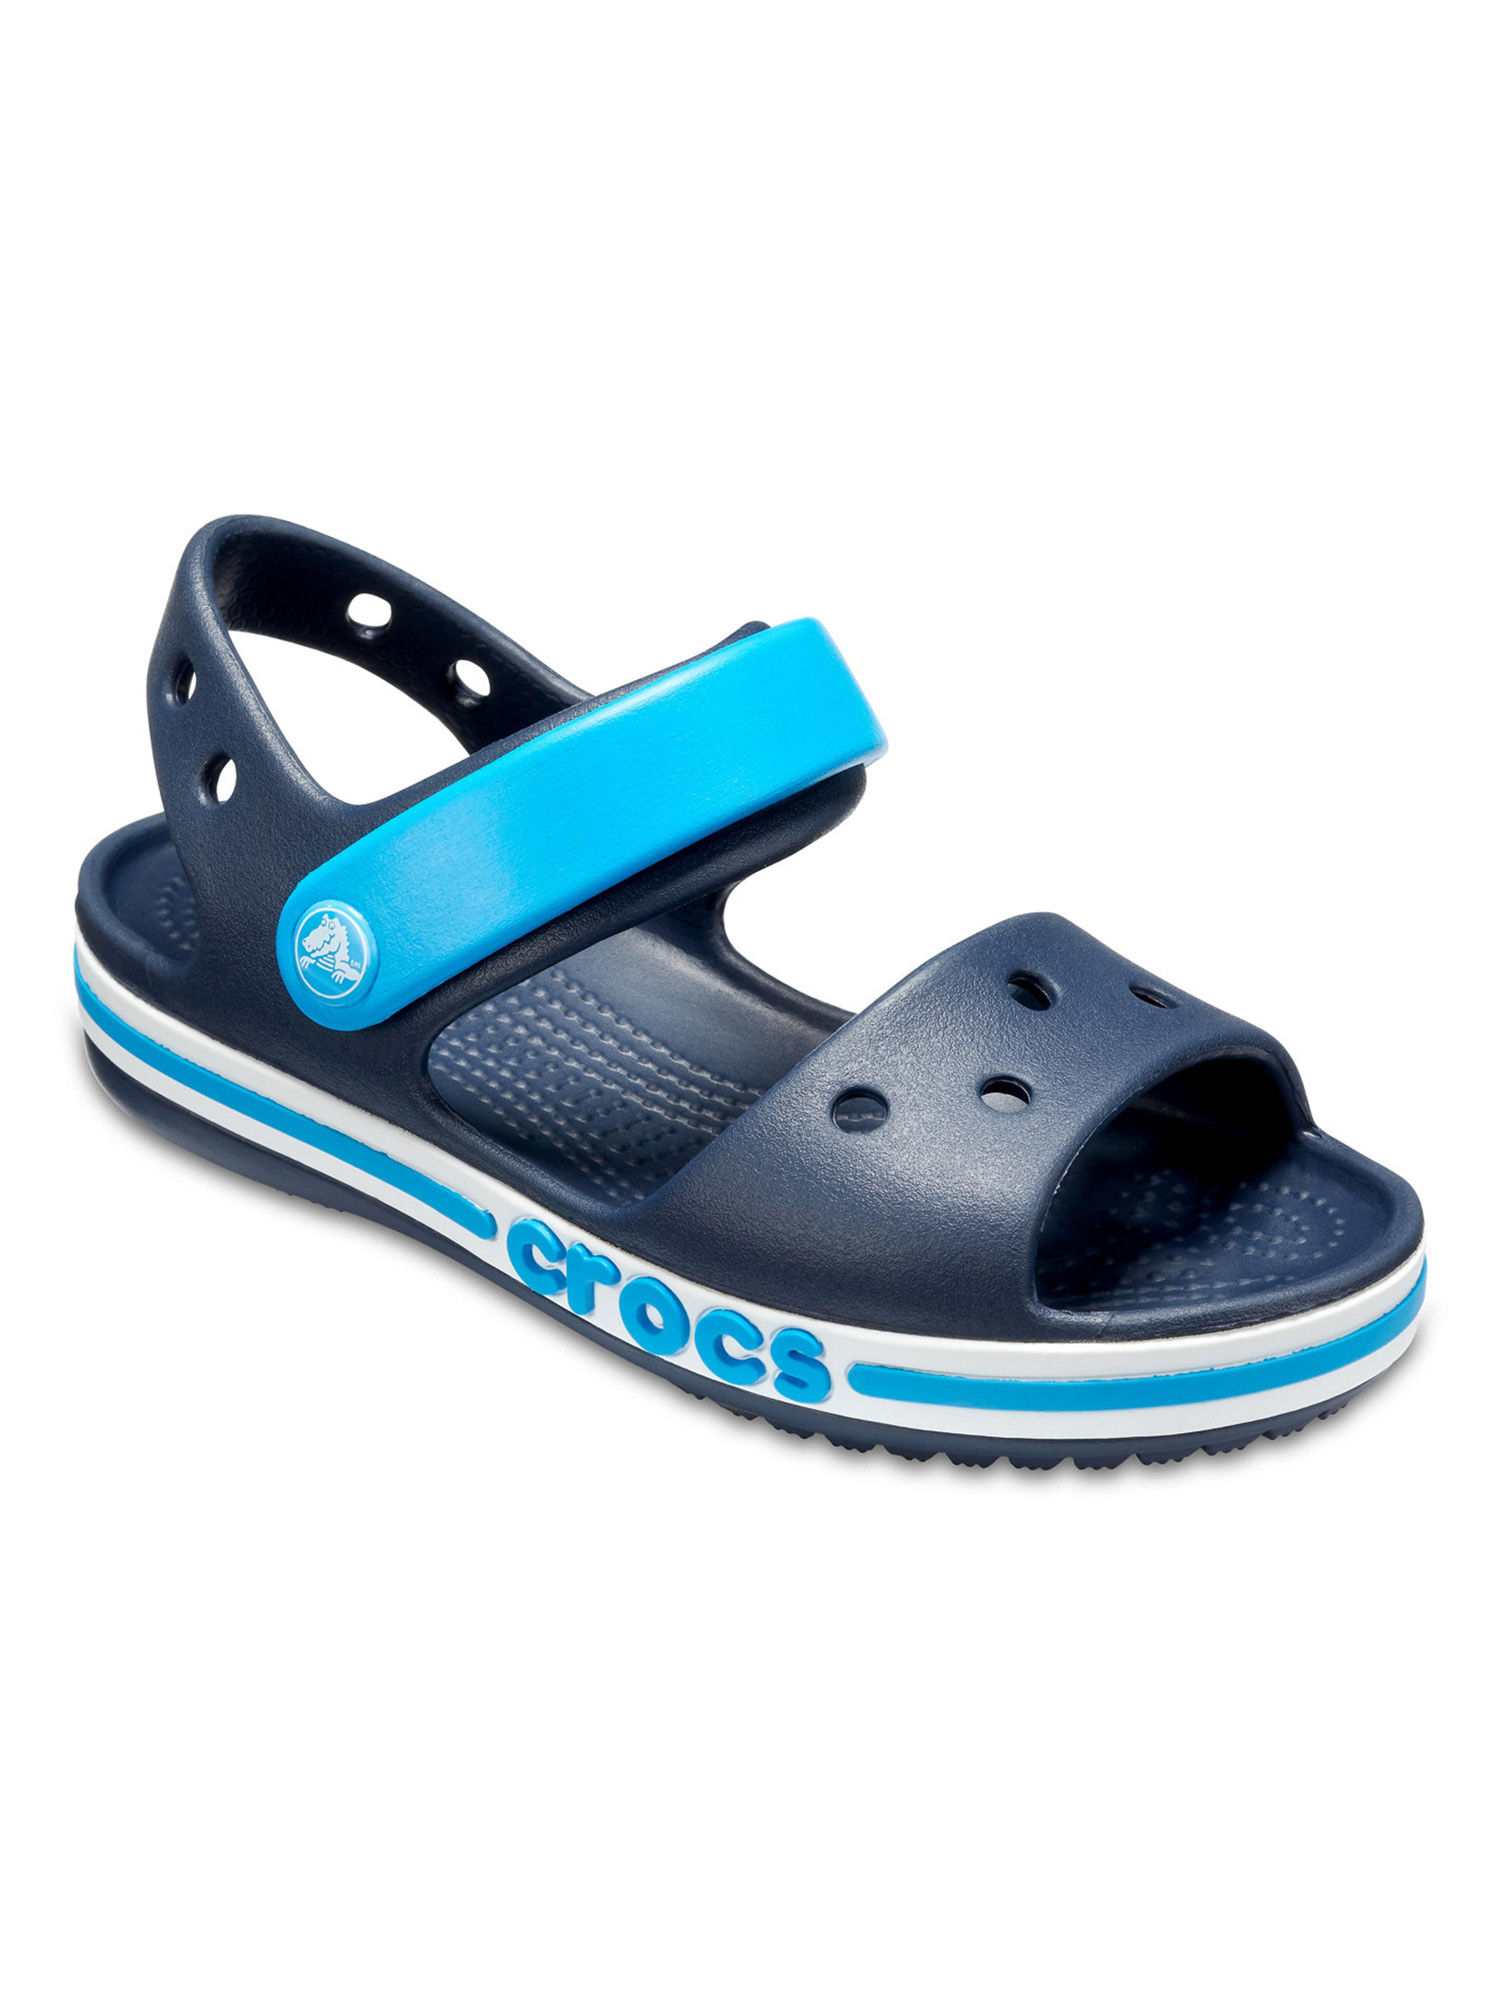 Синие сандали. Сандалии детские Crocs Crocband Sandal Kids. 205400-410 Crocs. Крокс сандалии детские темно-синие. Сандали детские крокс синие.